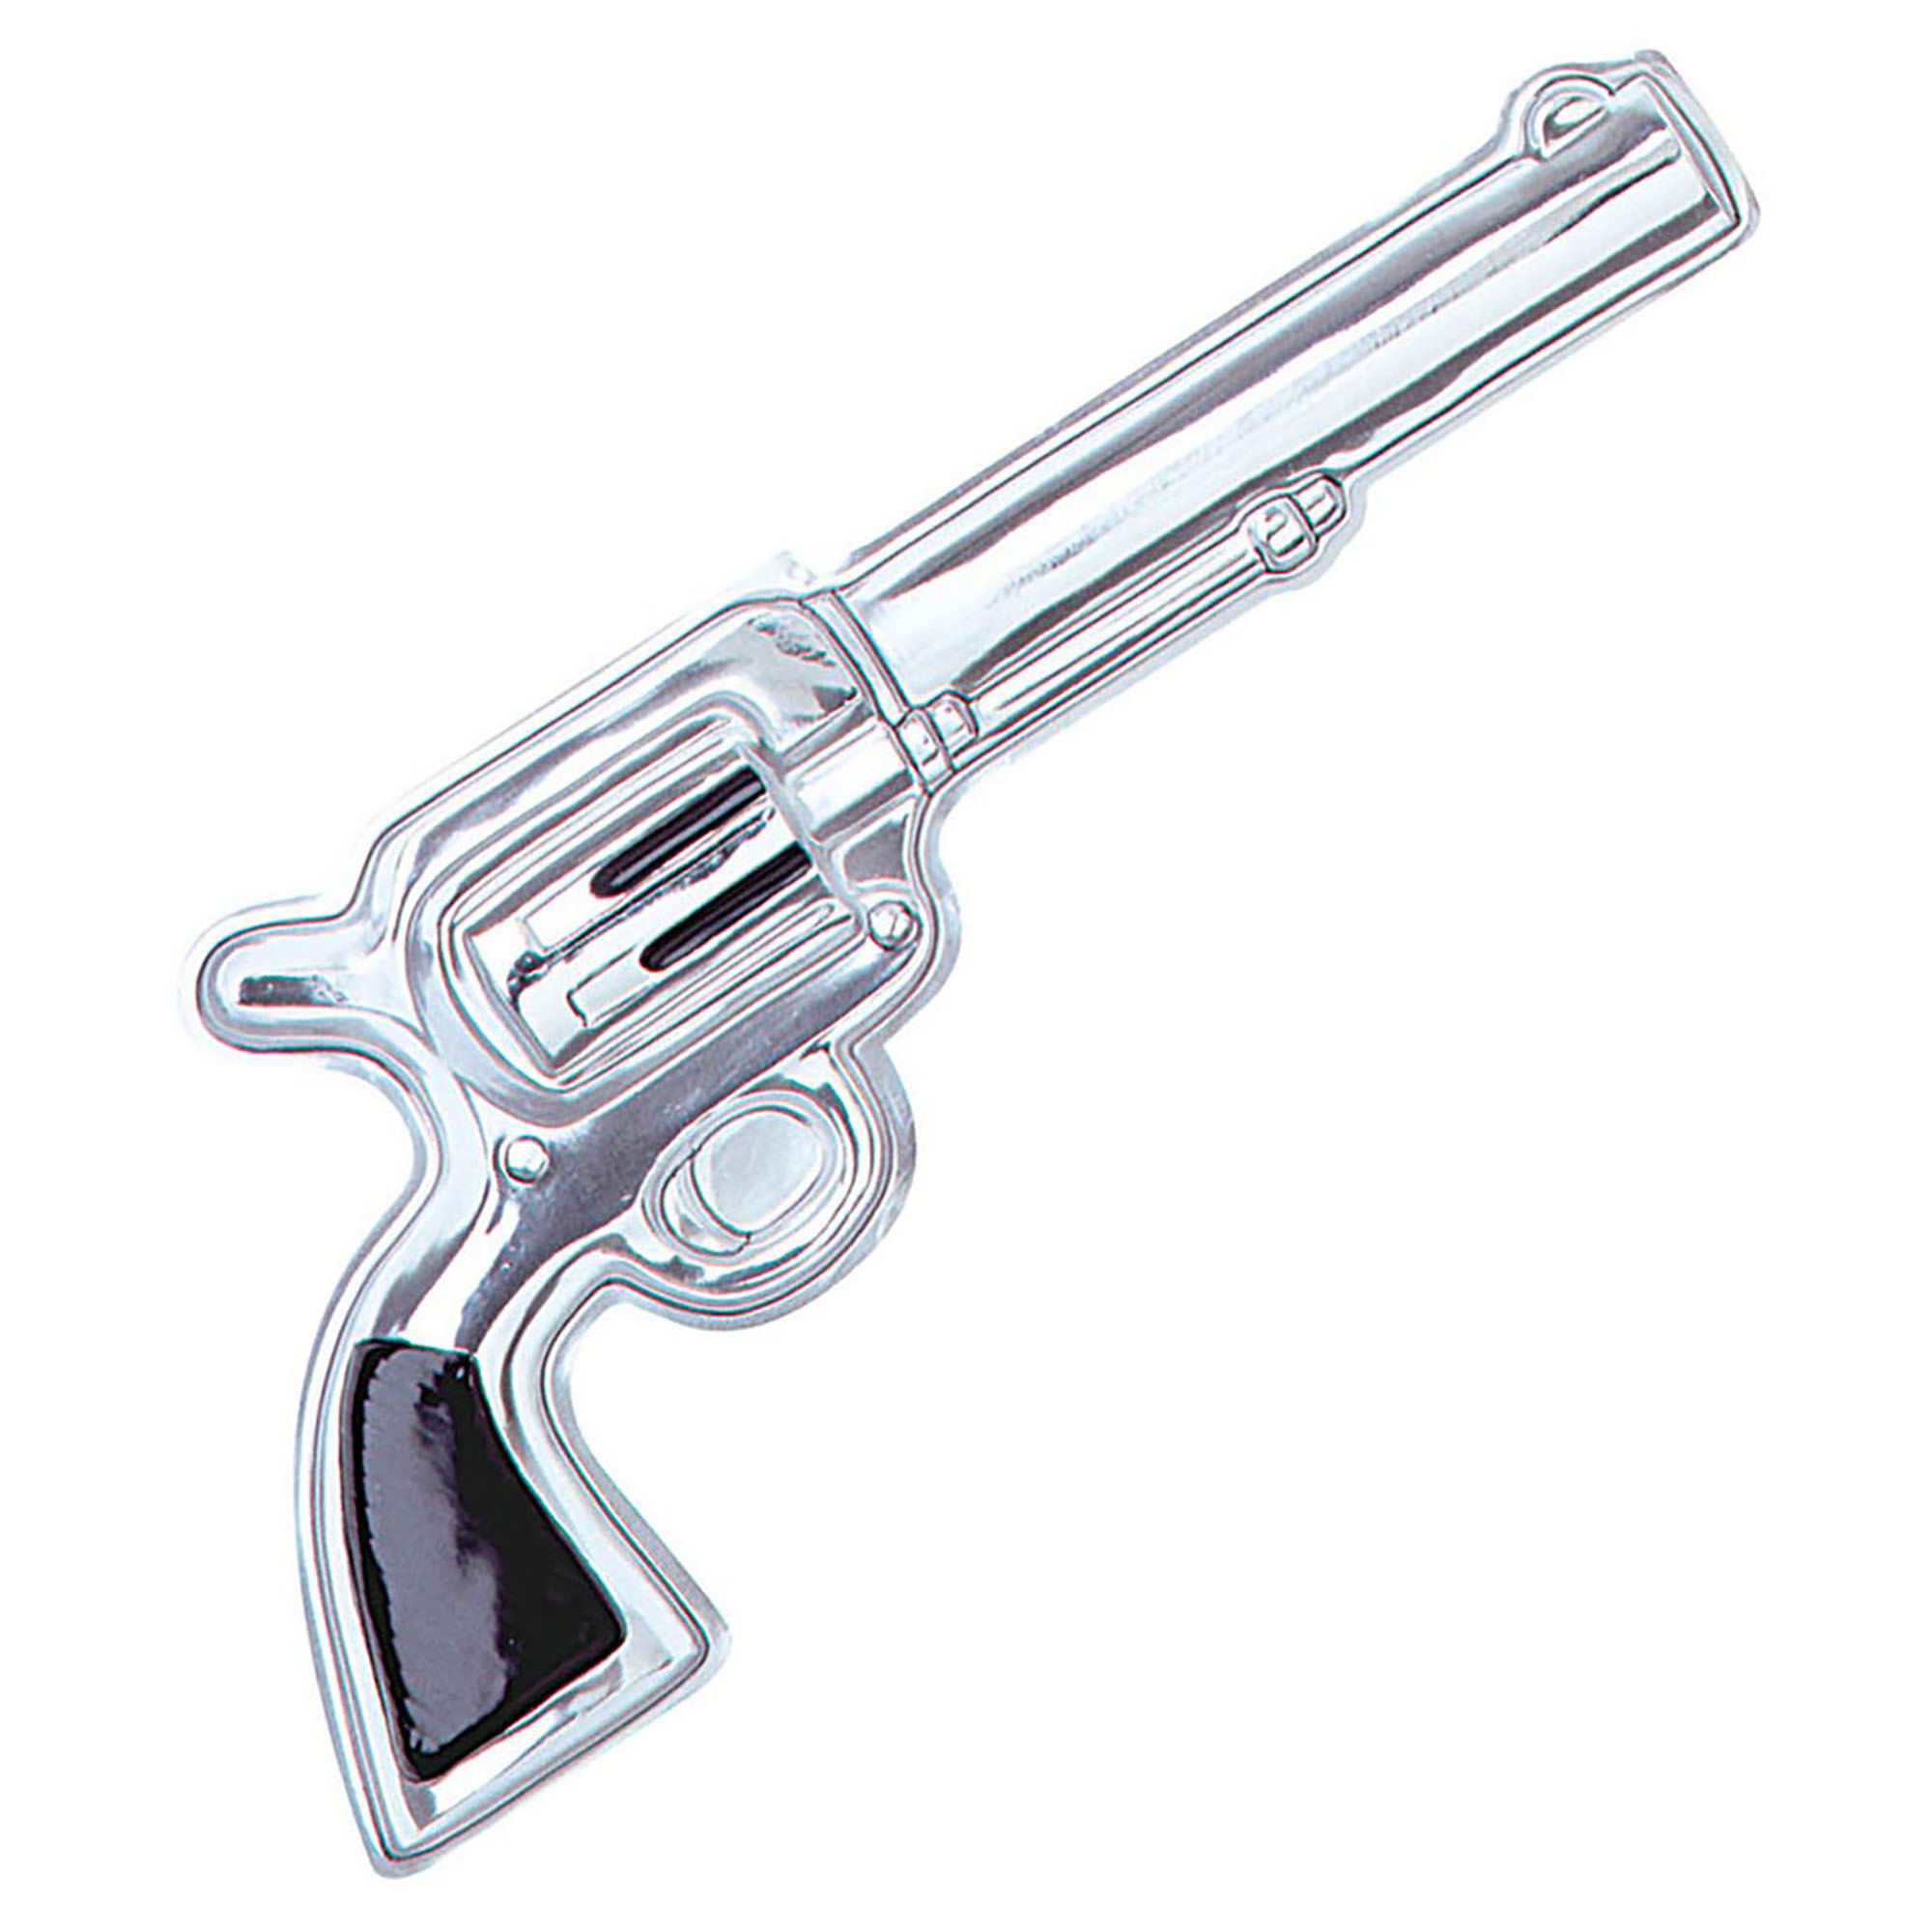 Stoer decoratief pvc pistool voeg een statement toe aan je cowboy of western ruimte! 25 cm x 55 cm